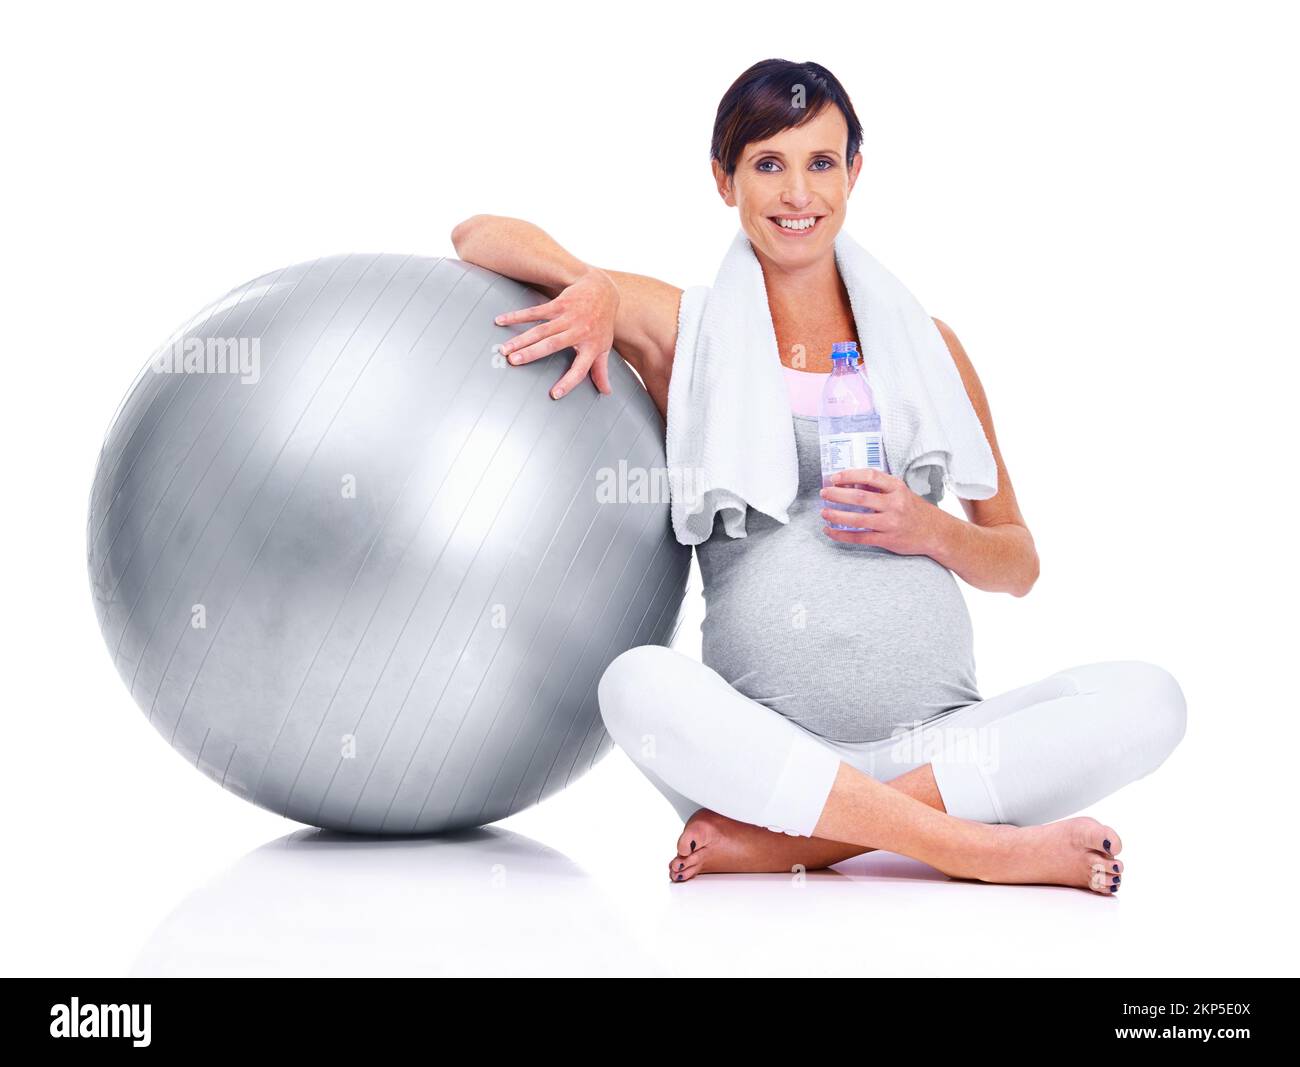 Mantenendosi in forma, fino al suo trimestre finale. Una madre incinta sorridendo con una palla pilates mentre isolato su bianco. Foto Stock